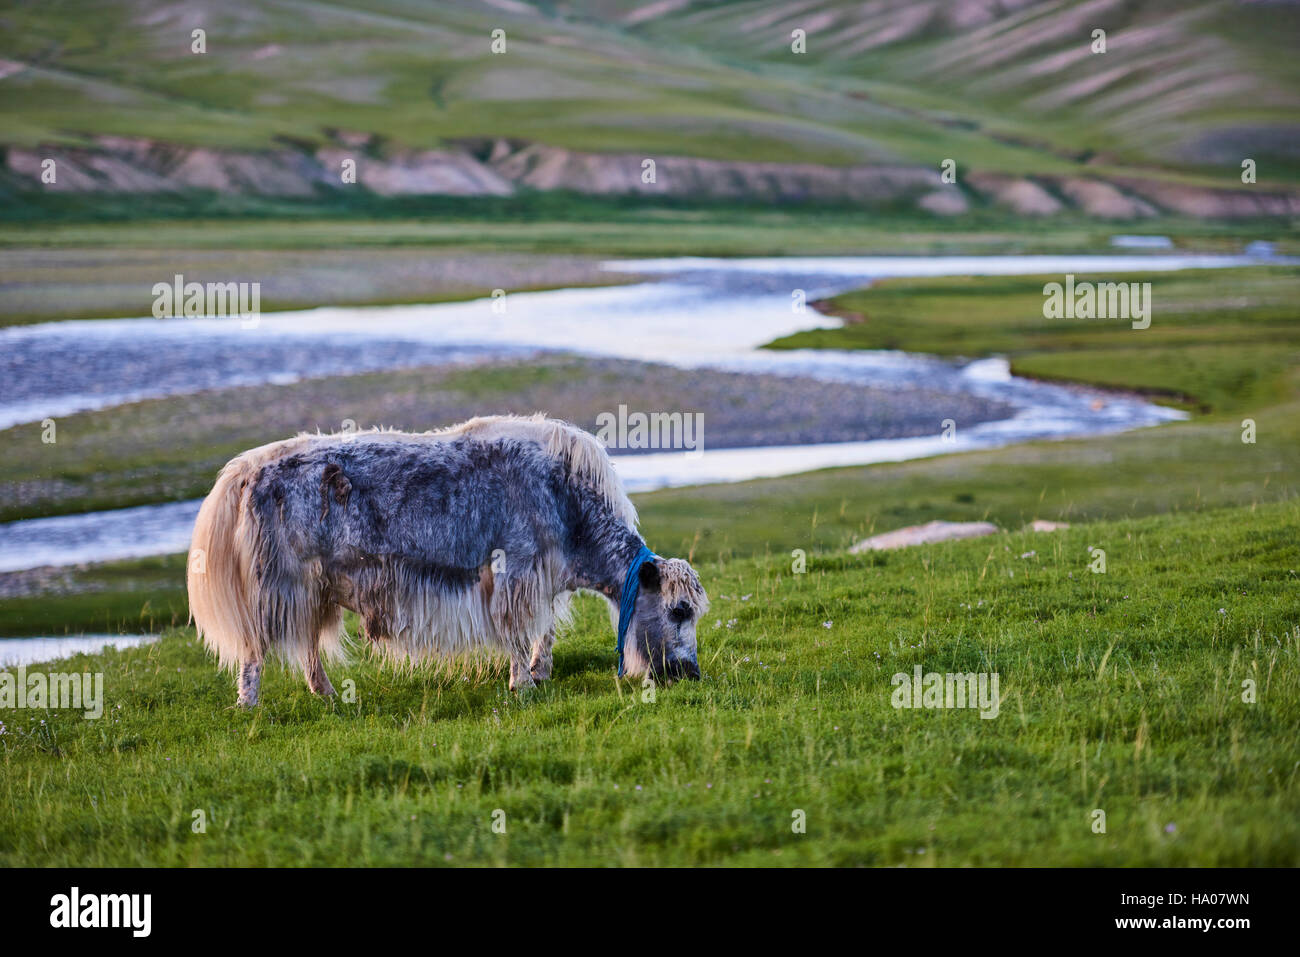 Mongolei, Bayankhongor Provinz, ein Yak in der steppe Stockfoto